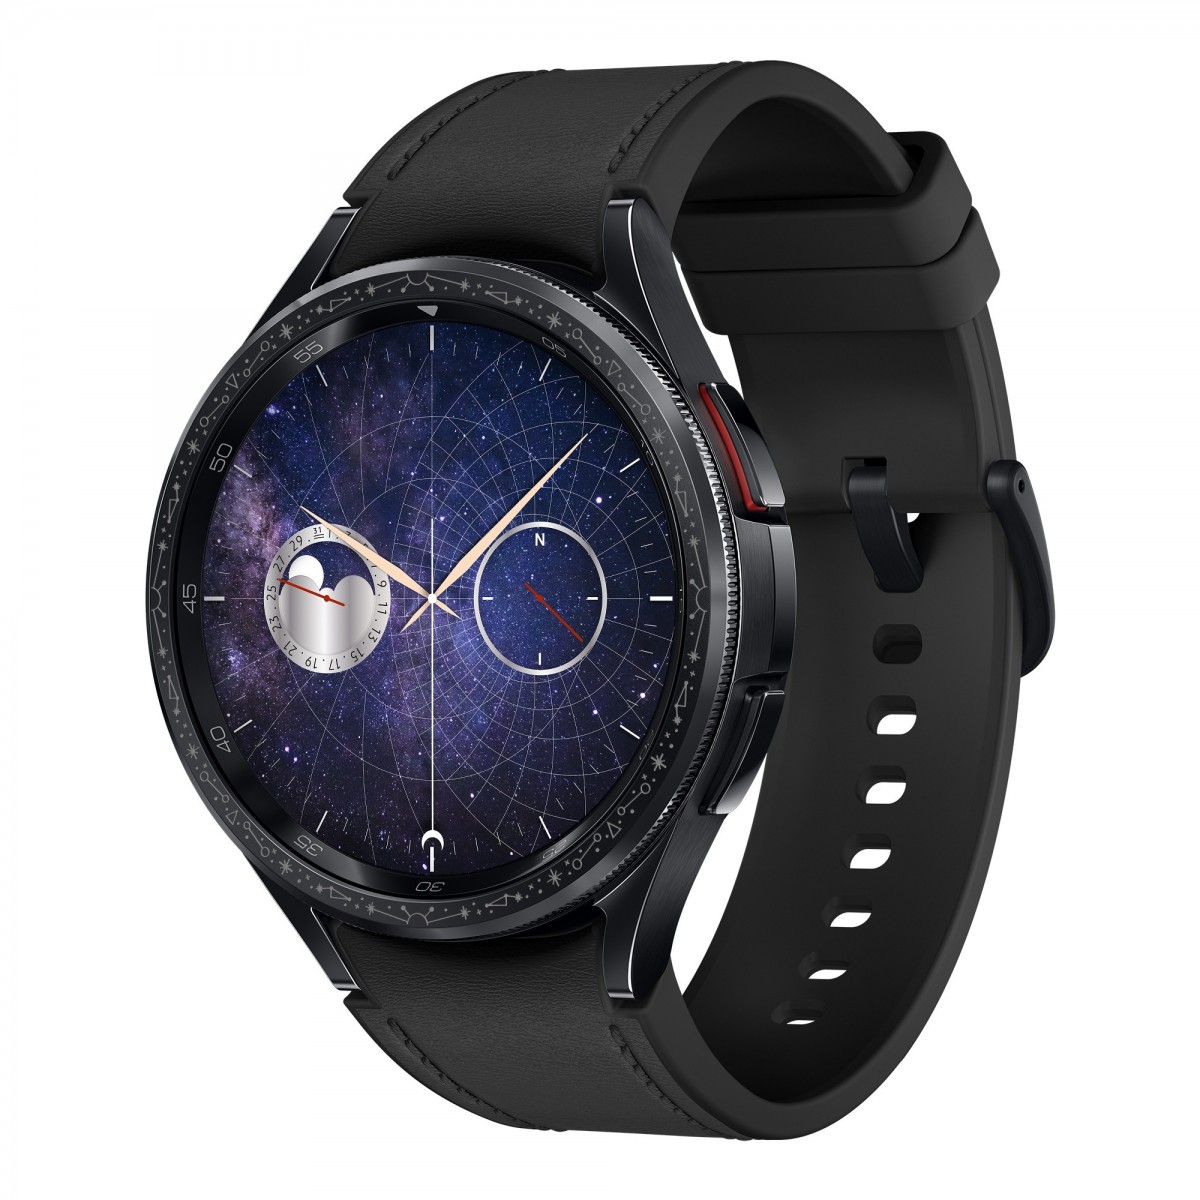 Samsung a lancé une version spéciale de la Galaxy Watch 6 Classic Astro  Edition avec une lunette en forme d'astrolabe.